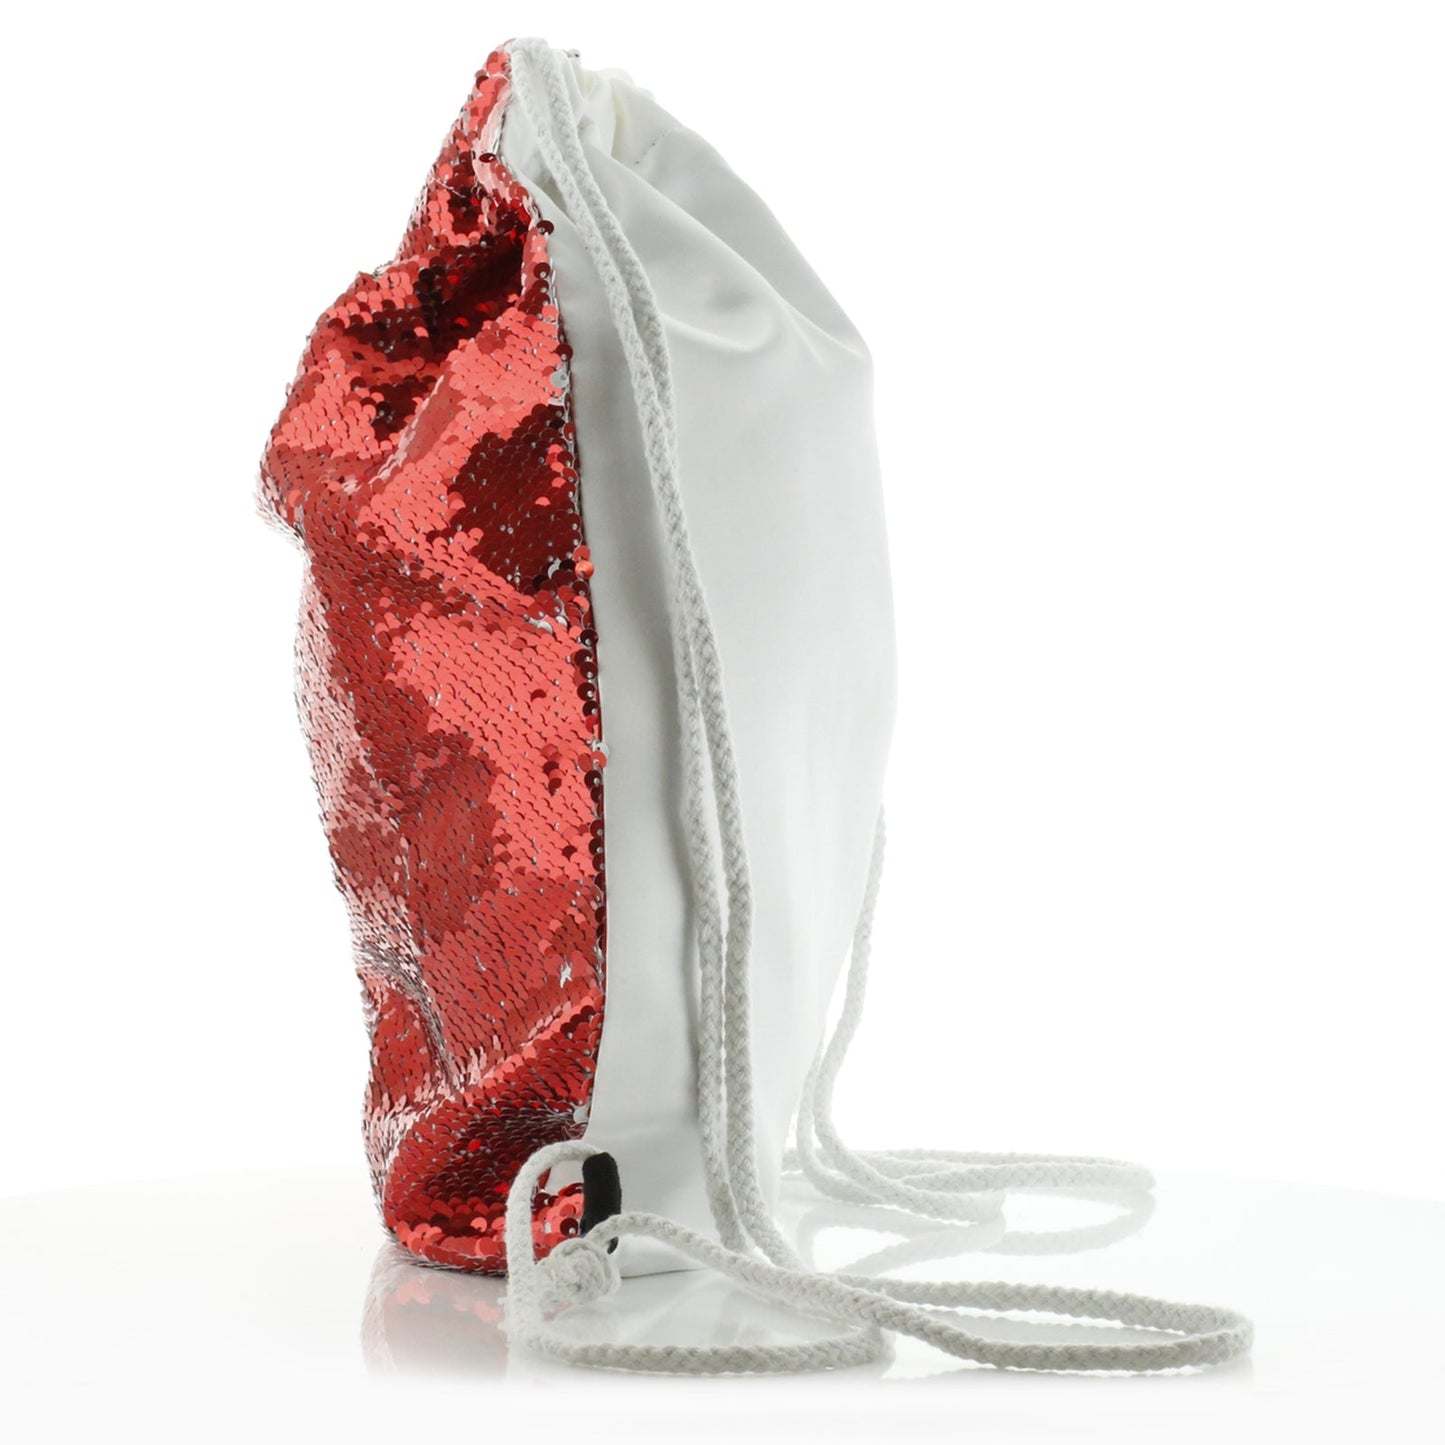 Personalisierter Pailletten-Rucksack mit Kordelzug, stilvollem Text und rosa Liebeslandschaftsdruck